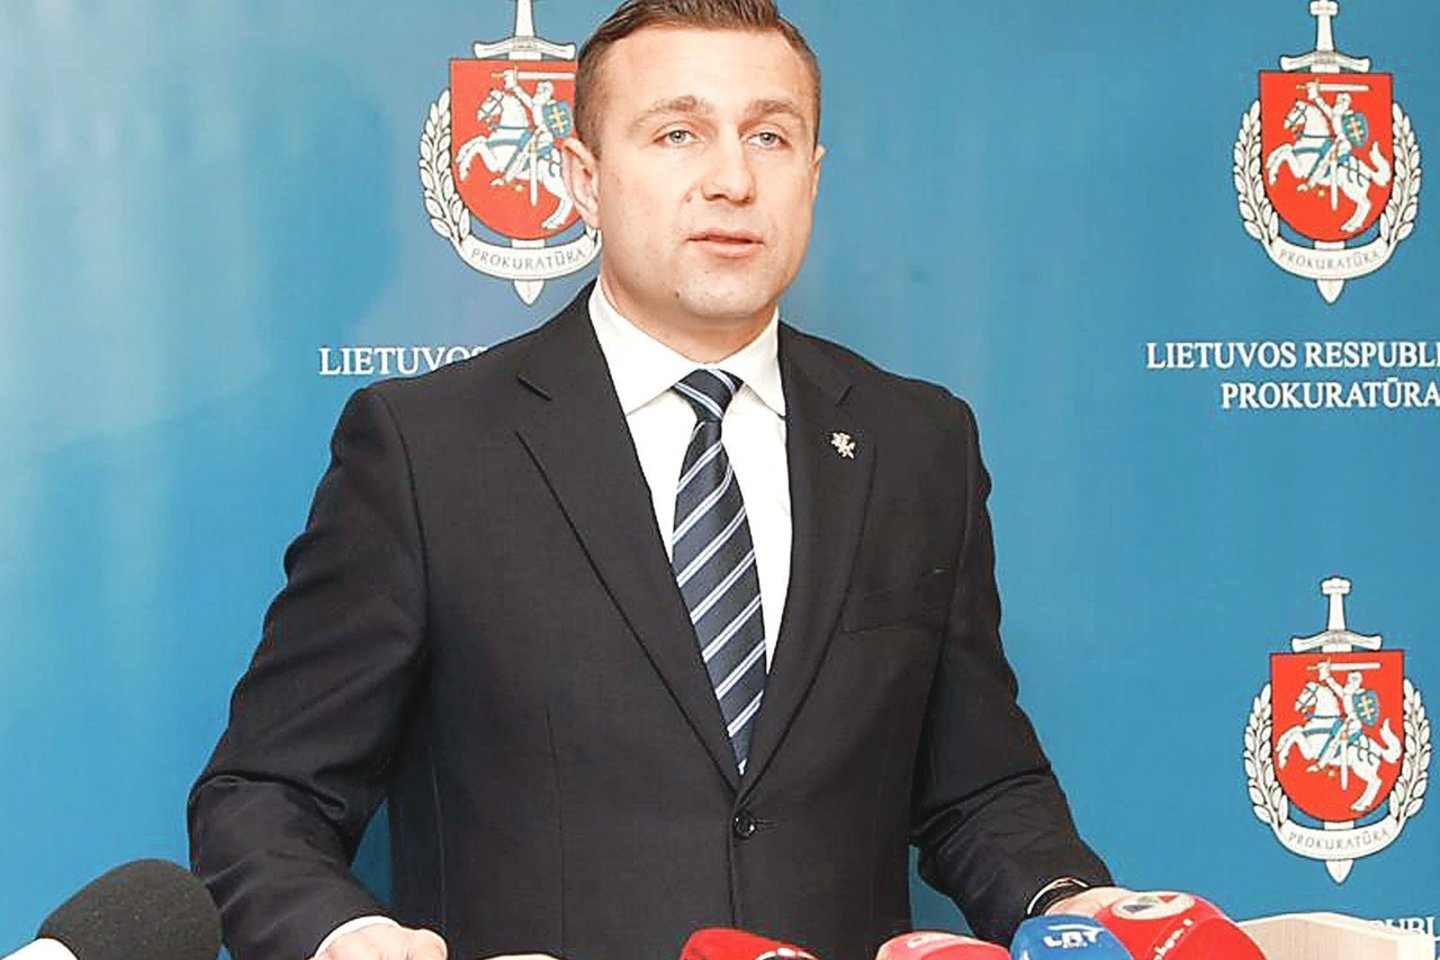 Klaipėdos prokuroras S.Galminas turės pasiaiškinti dėl smurto prieš žmoną.